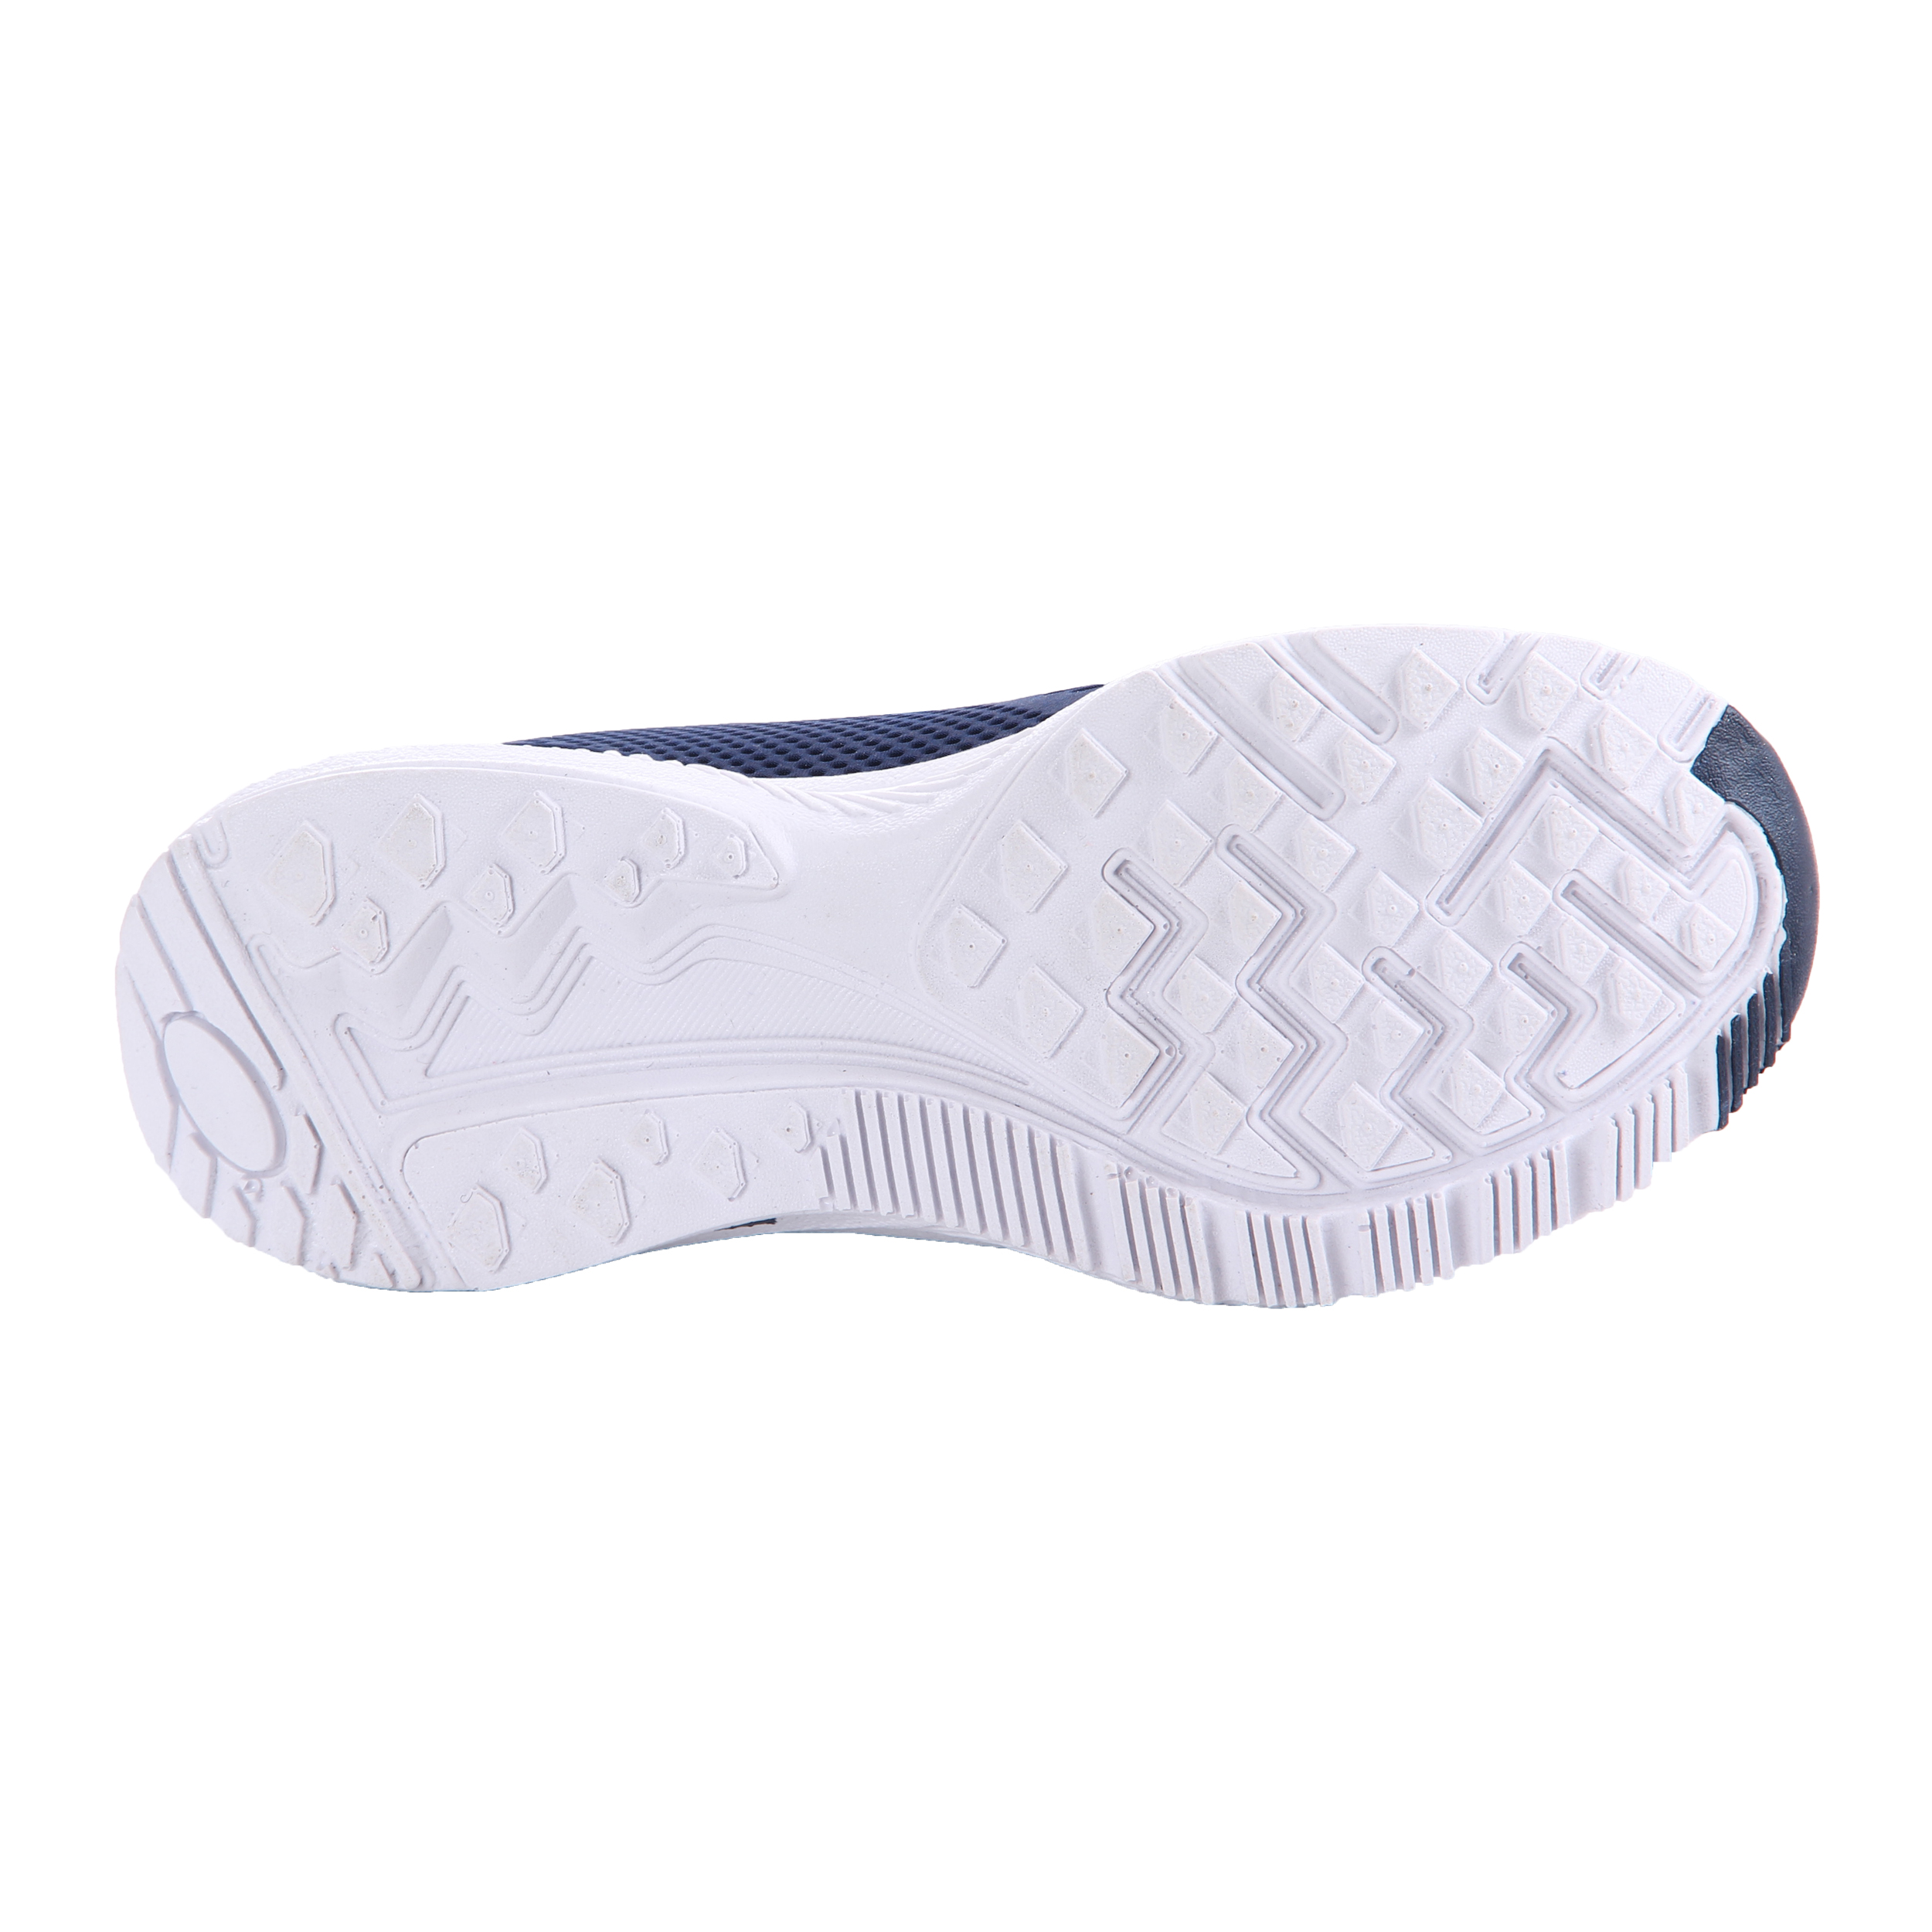   کفش مخصوص پیاده روی زنانه کد 13-P2400040